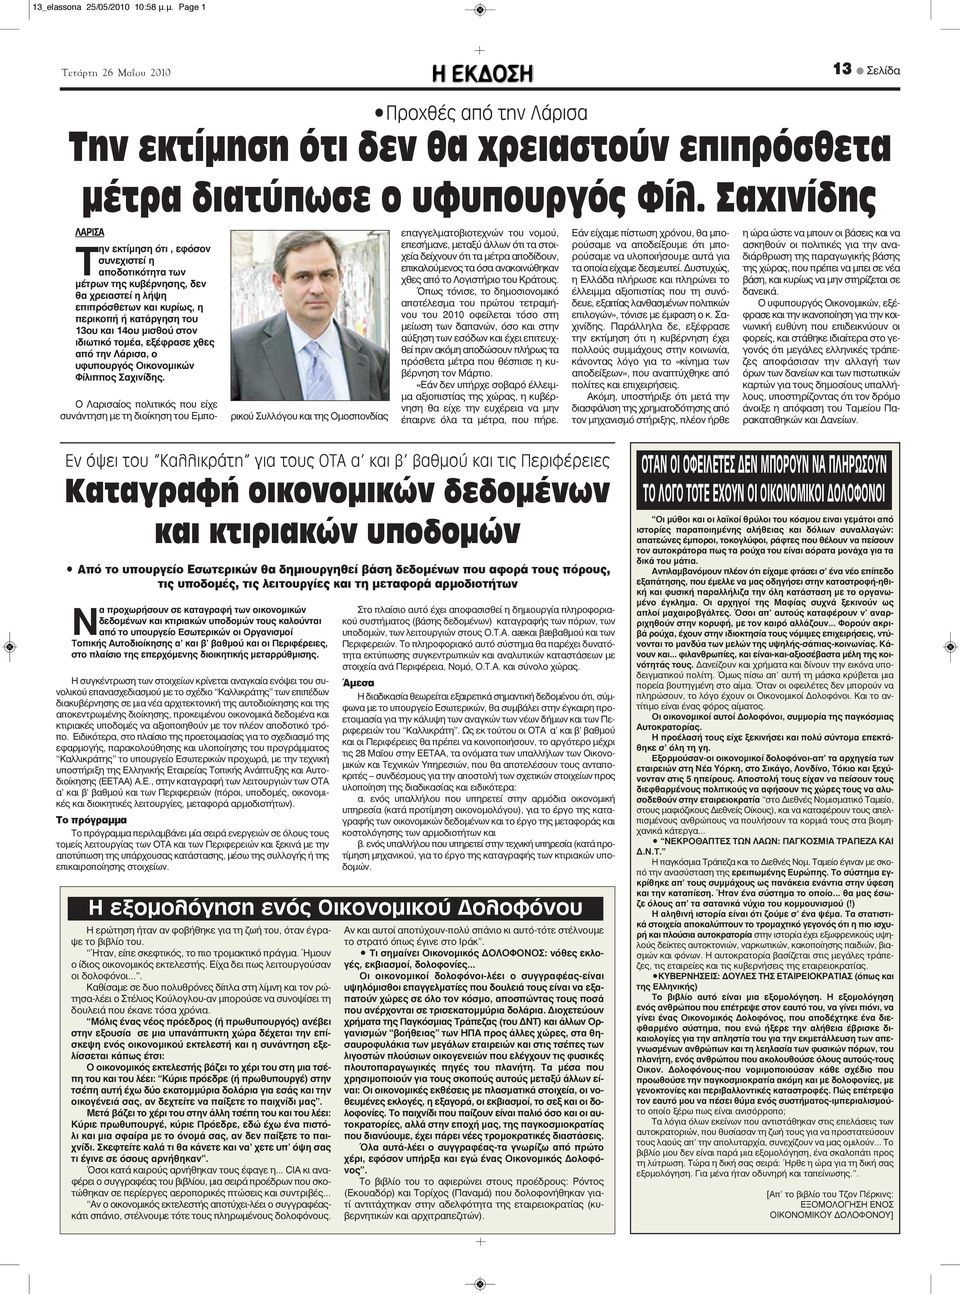 ιδιωτικό τομέα, εξέφρασε χθες από την Λάρισα, ο υφυπουργός Οικονομικών Φίλιππος Σαχινίδης.